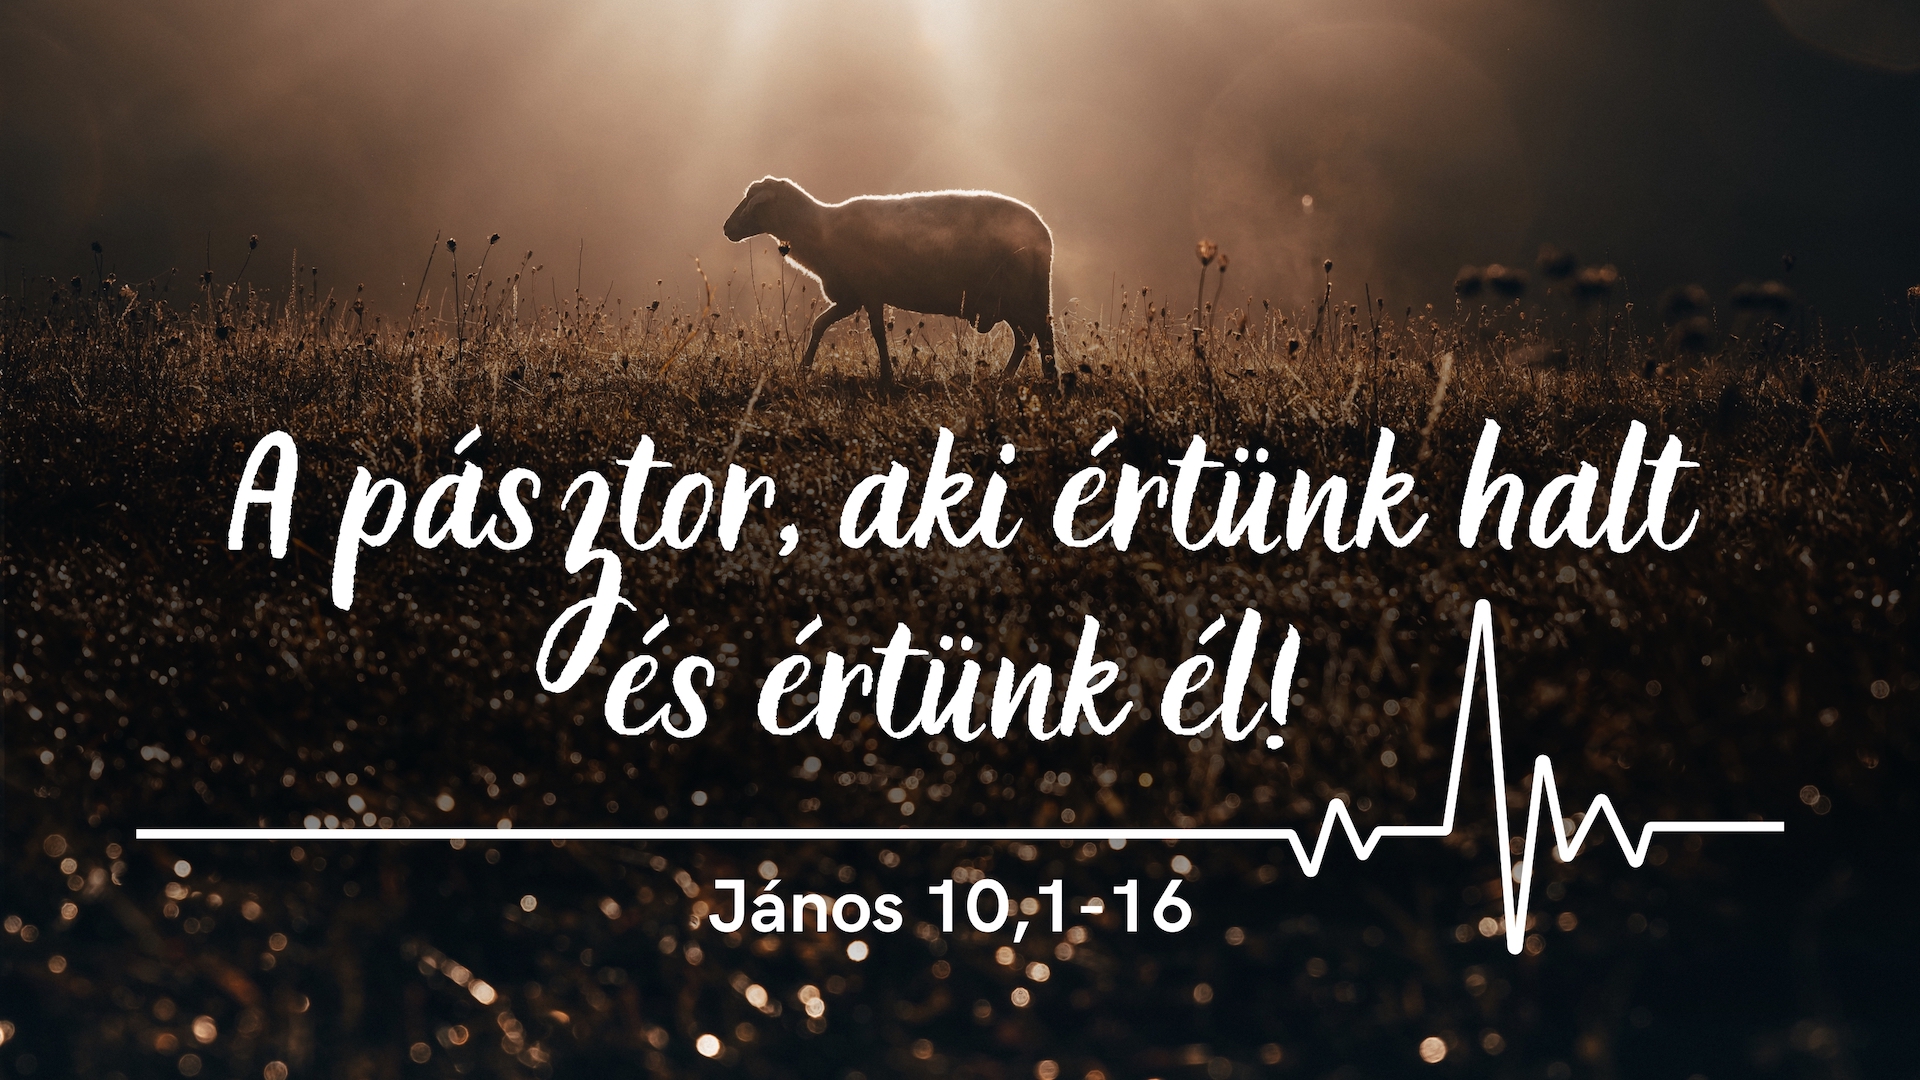 A pásztor, aki értünk halt és értünk él!